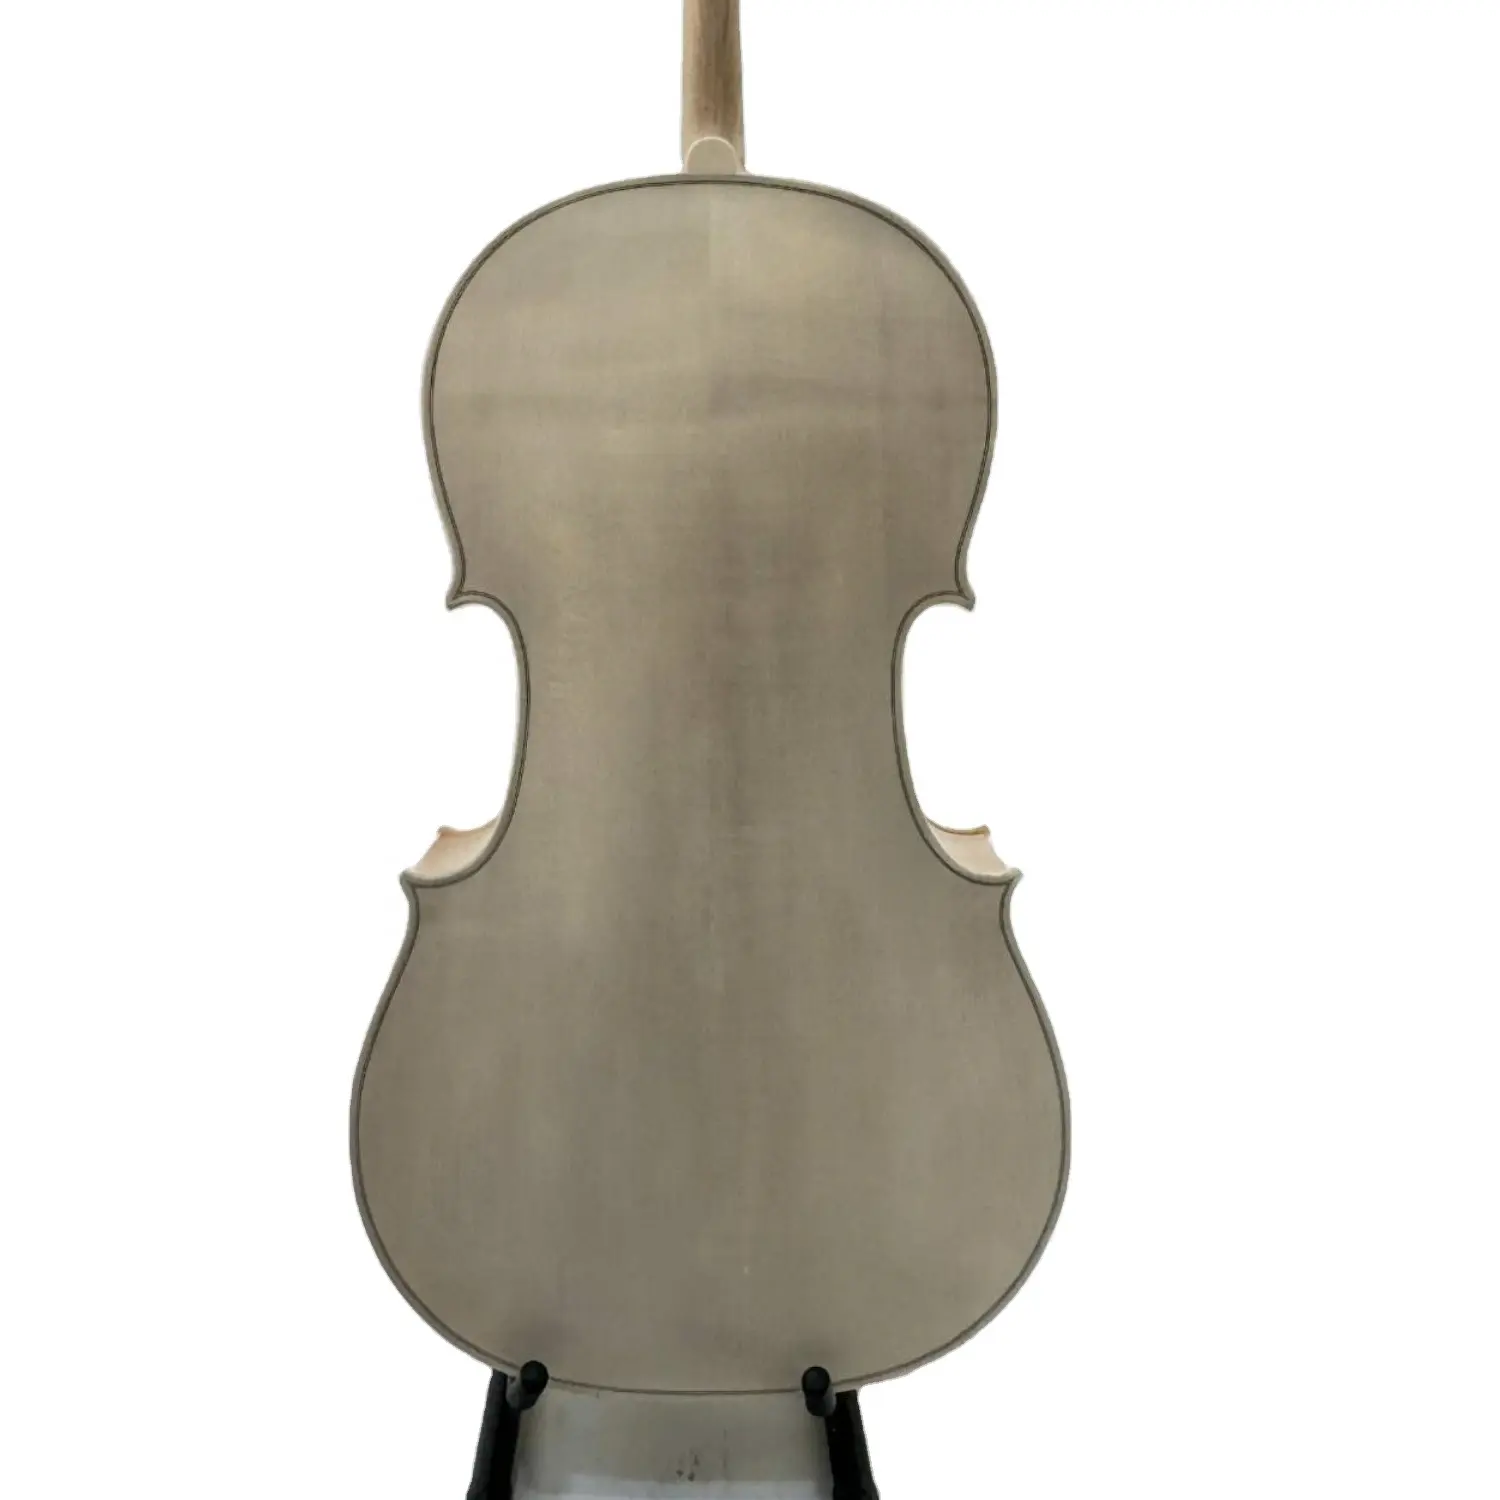 Beau grain solide épicéa et érable non verni violoncelle 1/8-4/4 violoncelle 4/4 fait main violoncelle blanc